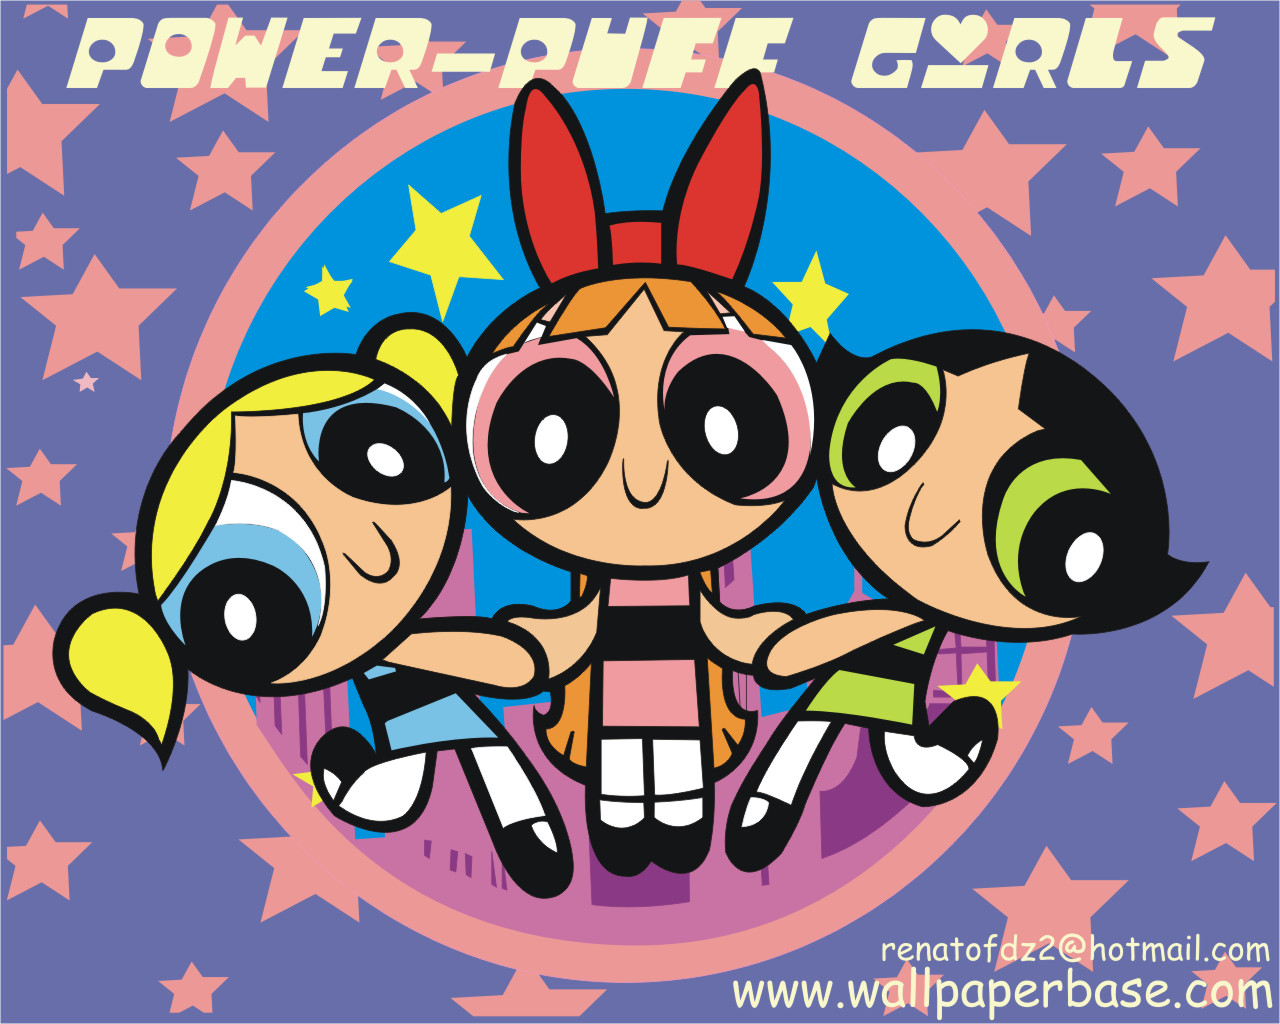 Powerpuff girls 1